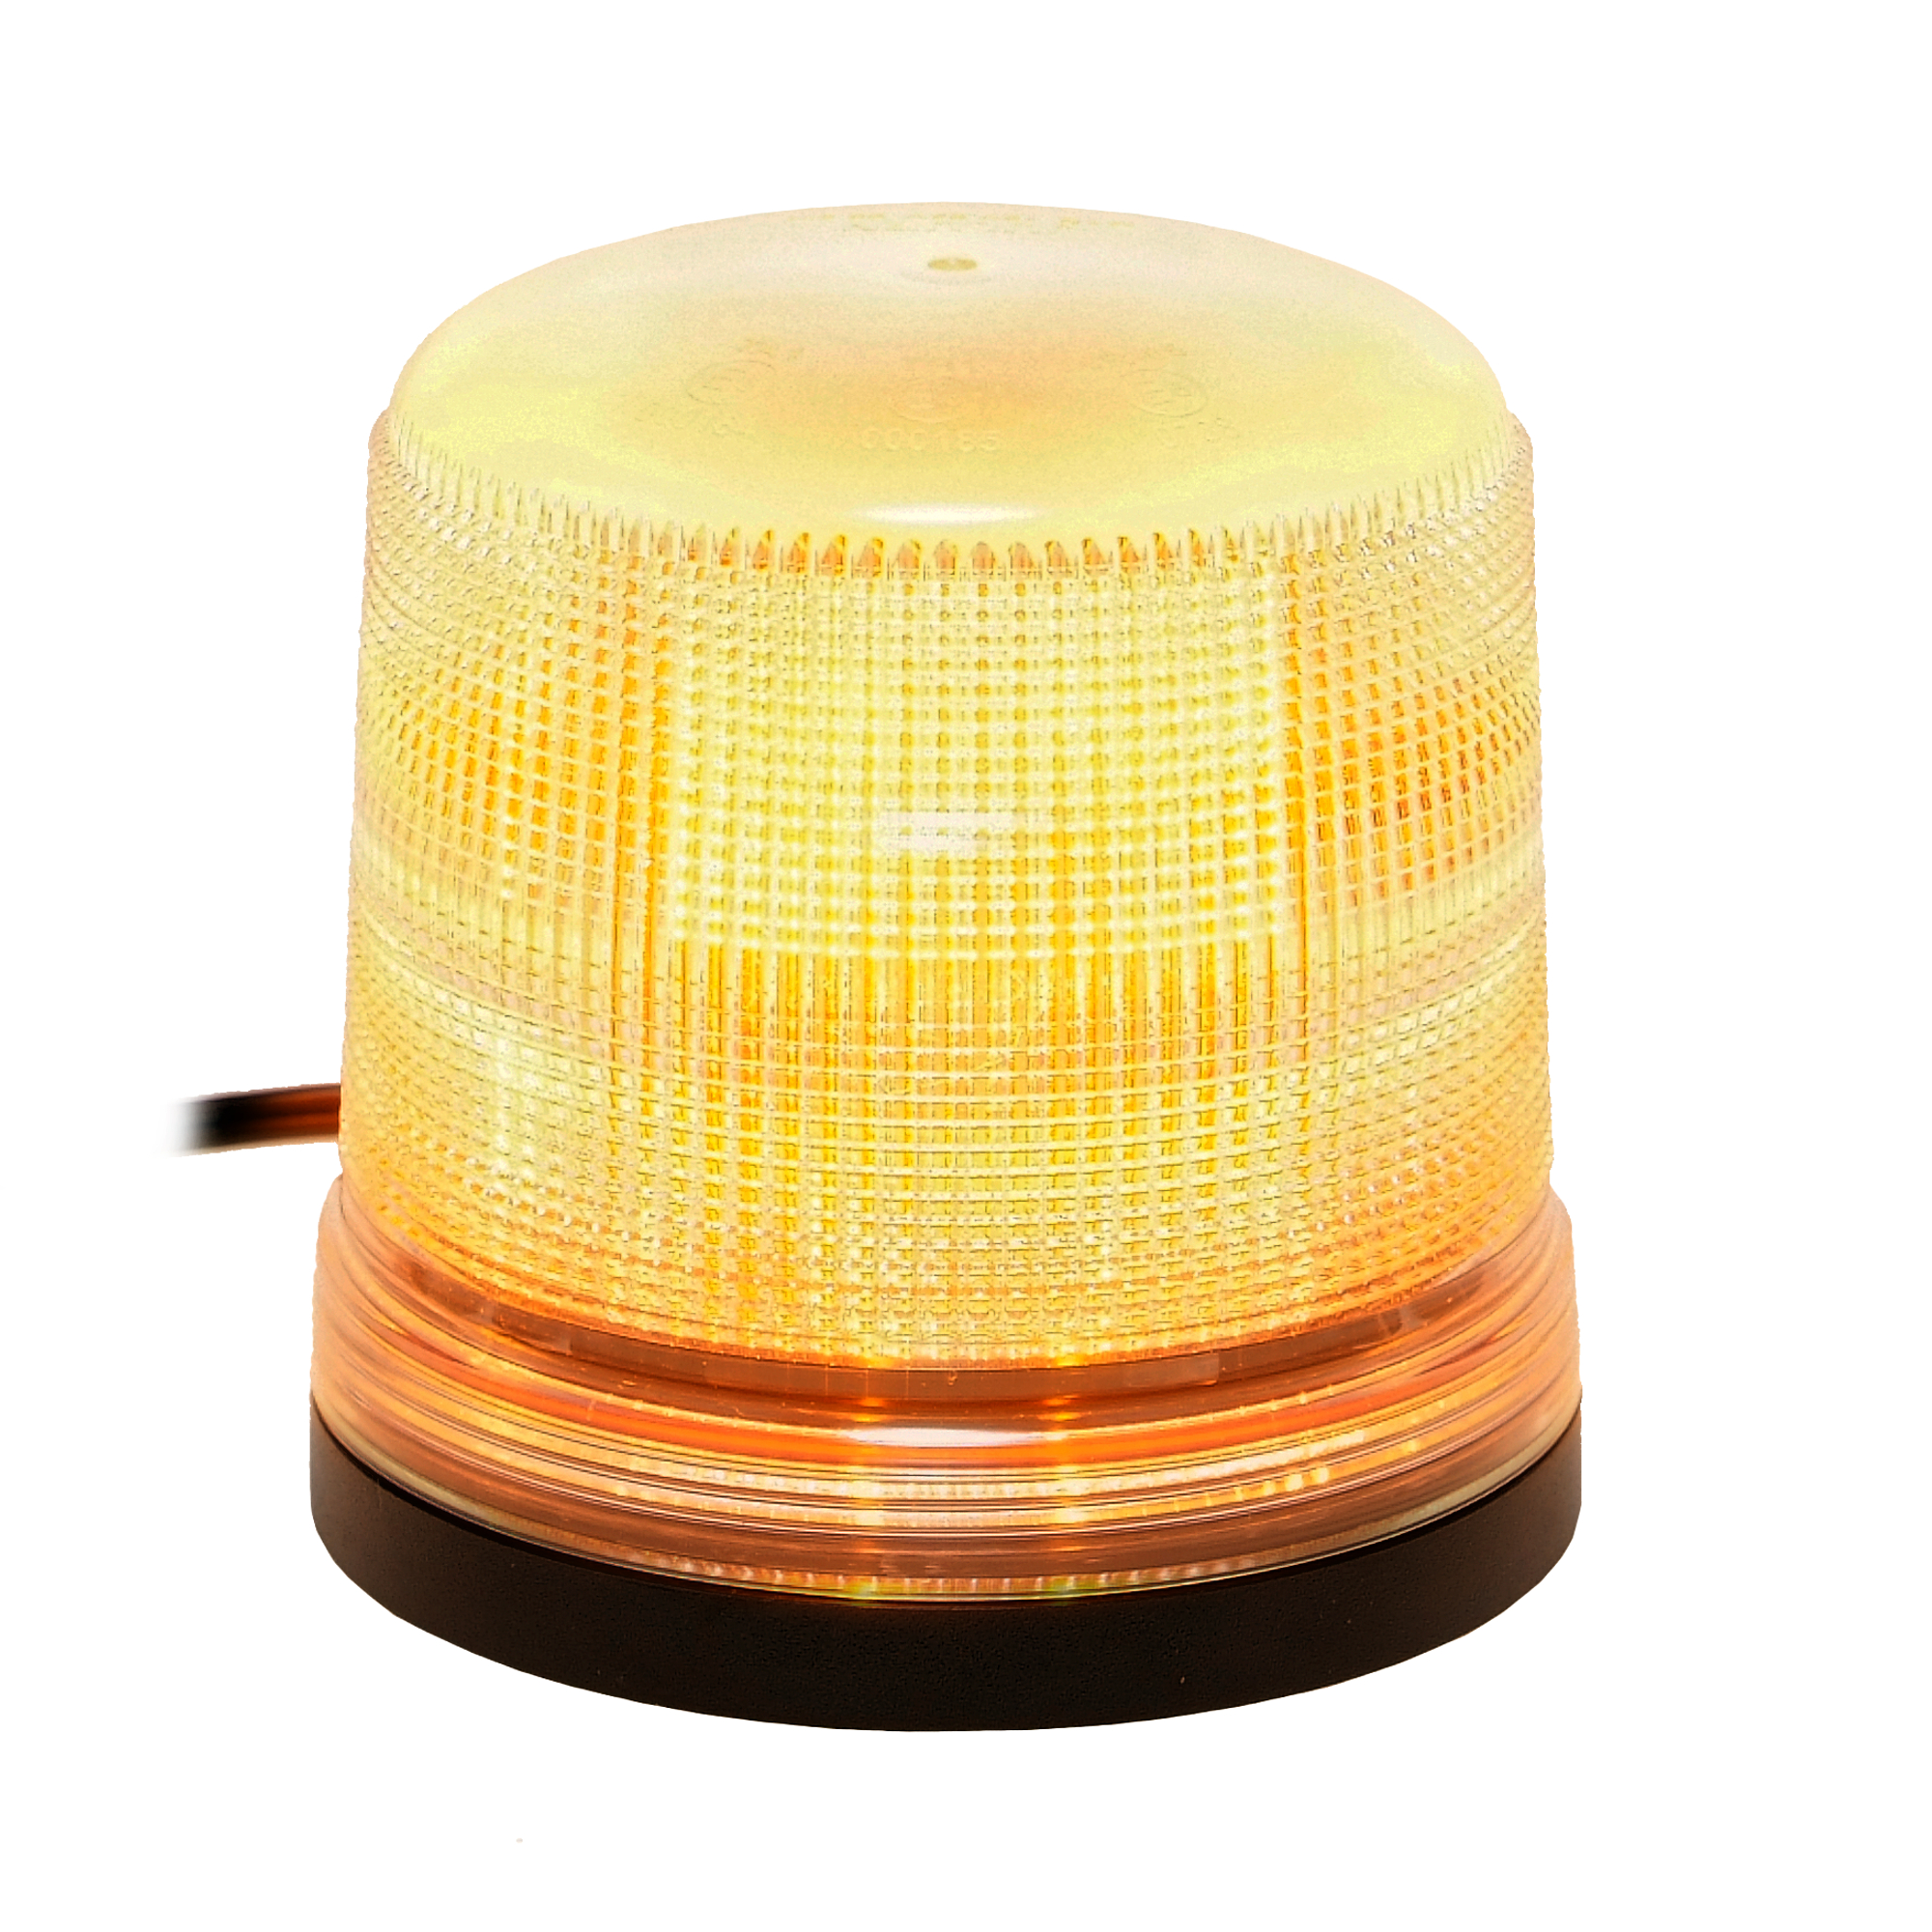 Dinfu LED Rundumleuchte Gelb Warnleuchte Magnet Orange LED für